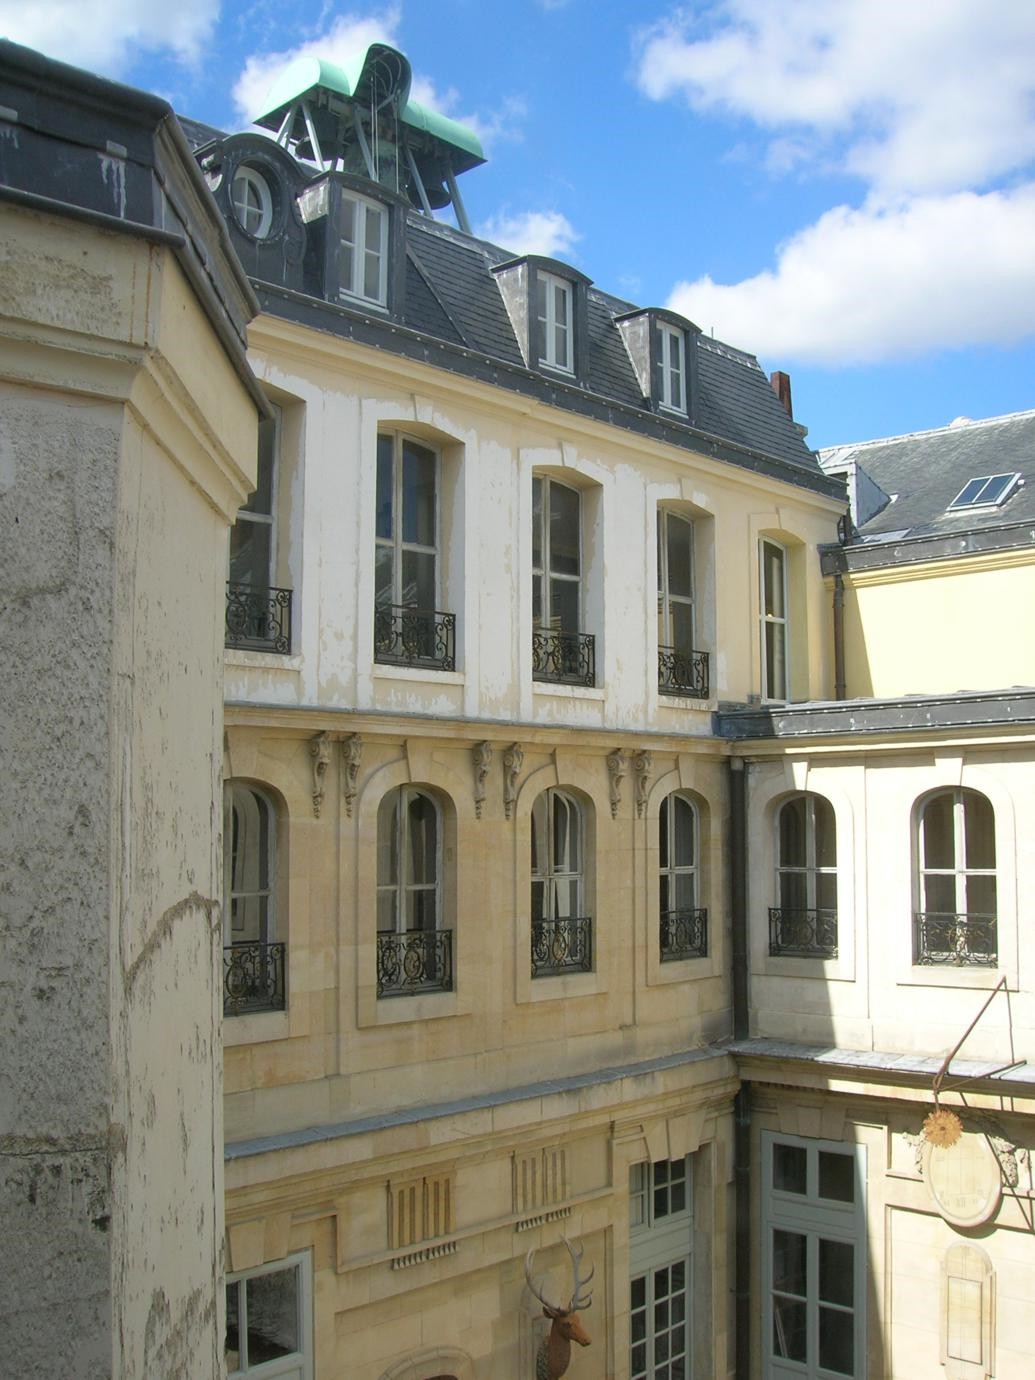 Appartamenti du Barry a Versailles (123)